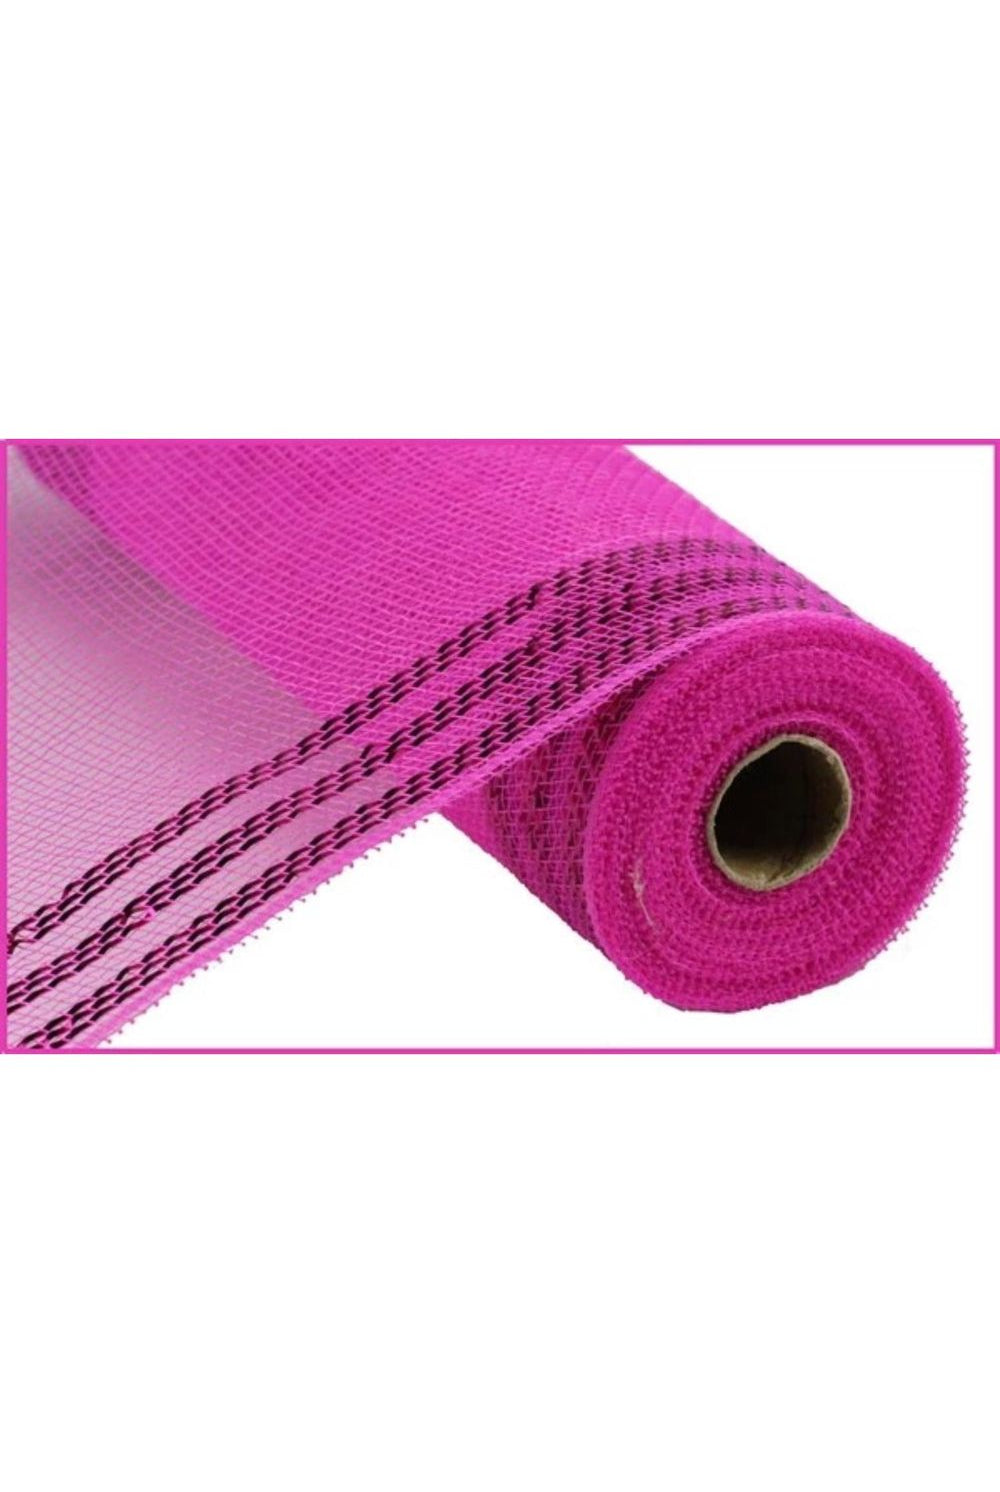 Shop For 10.5" Border Stripe Metallic Mesh: Hot Pink (10 Yards) RY850211